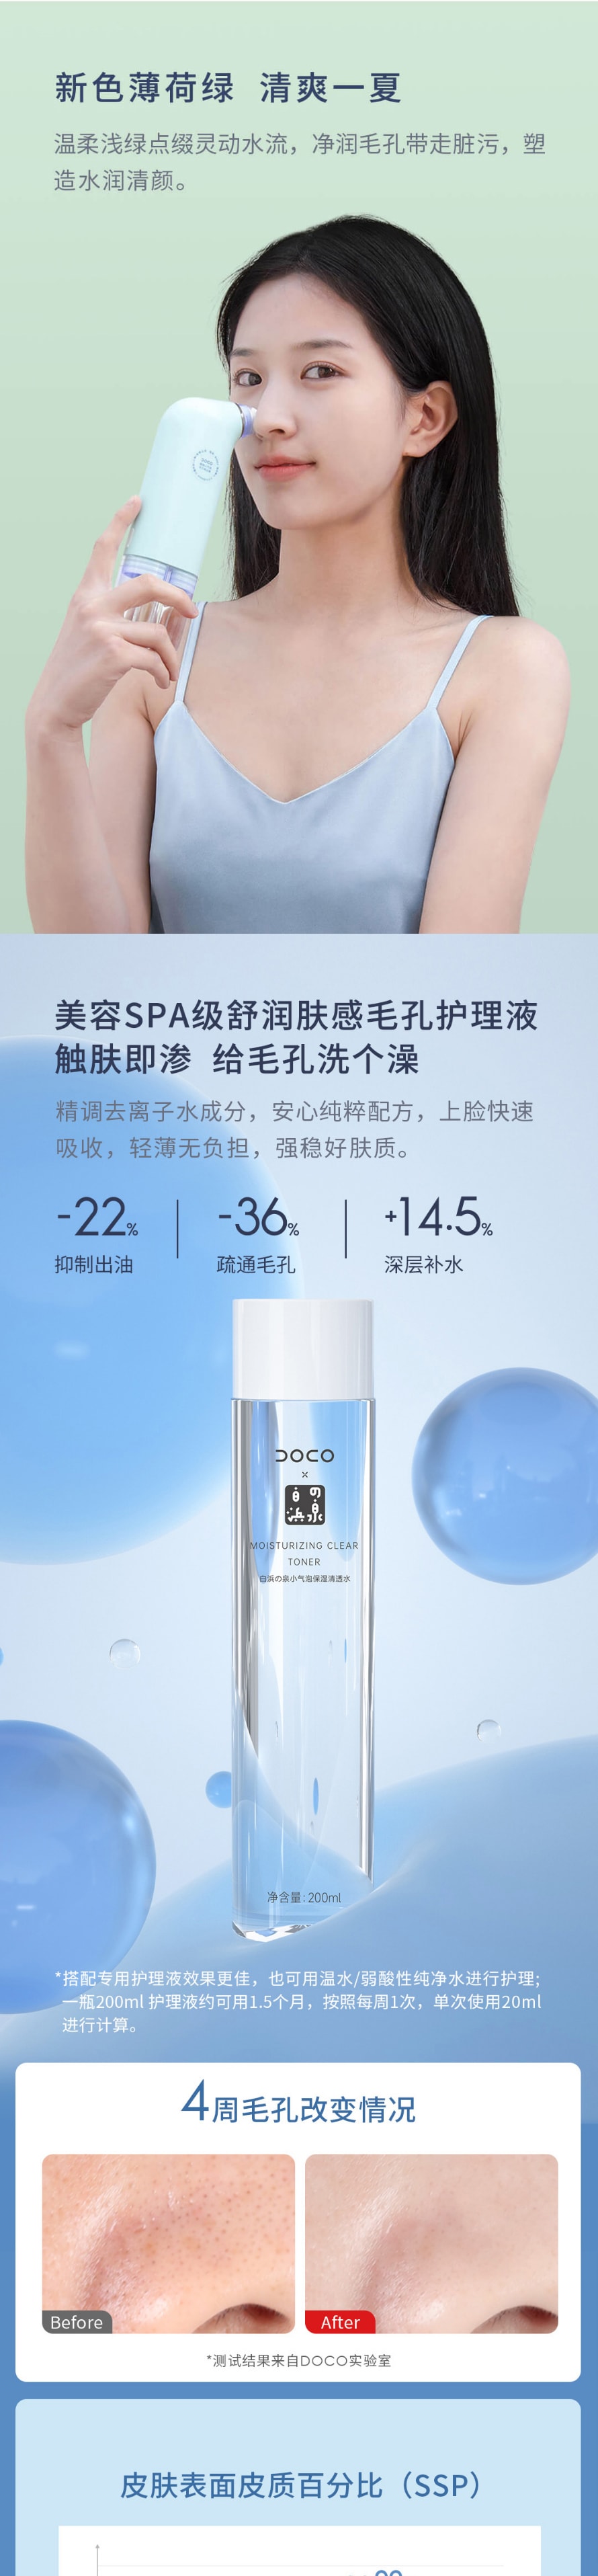 【中国直邮】小米有品 DOCO 超微小气泡毛孔吸尘器黑头仪 一机+护理液1